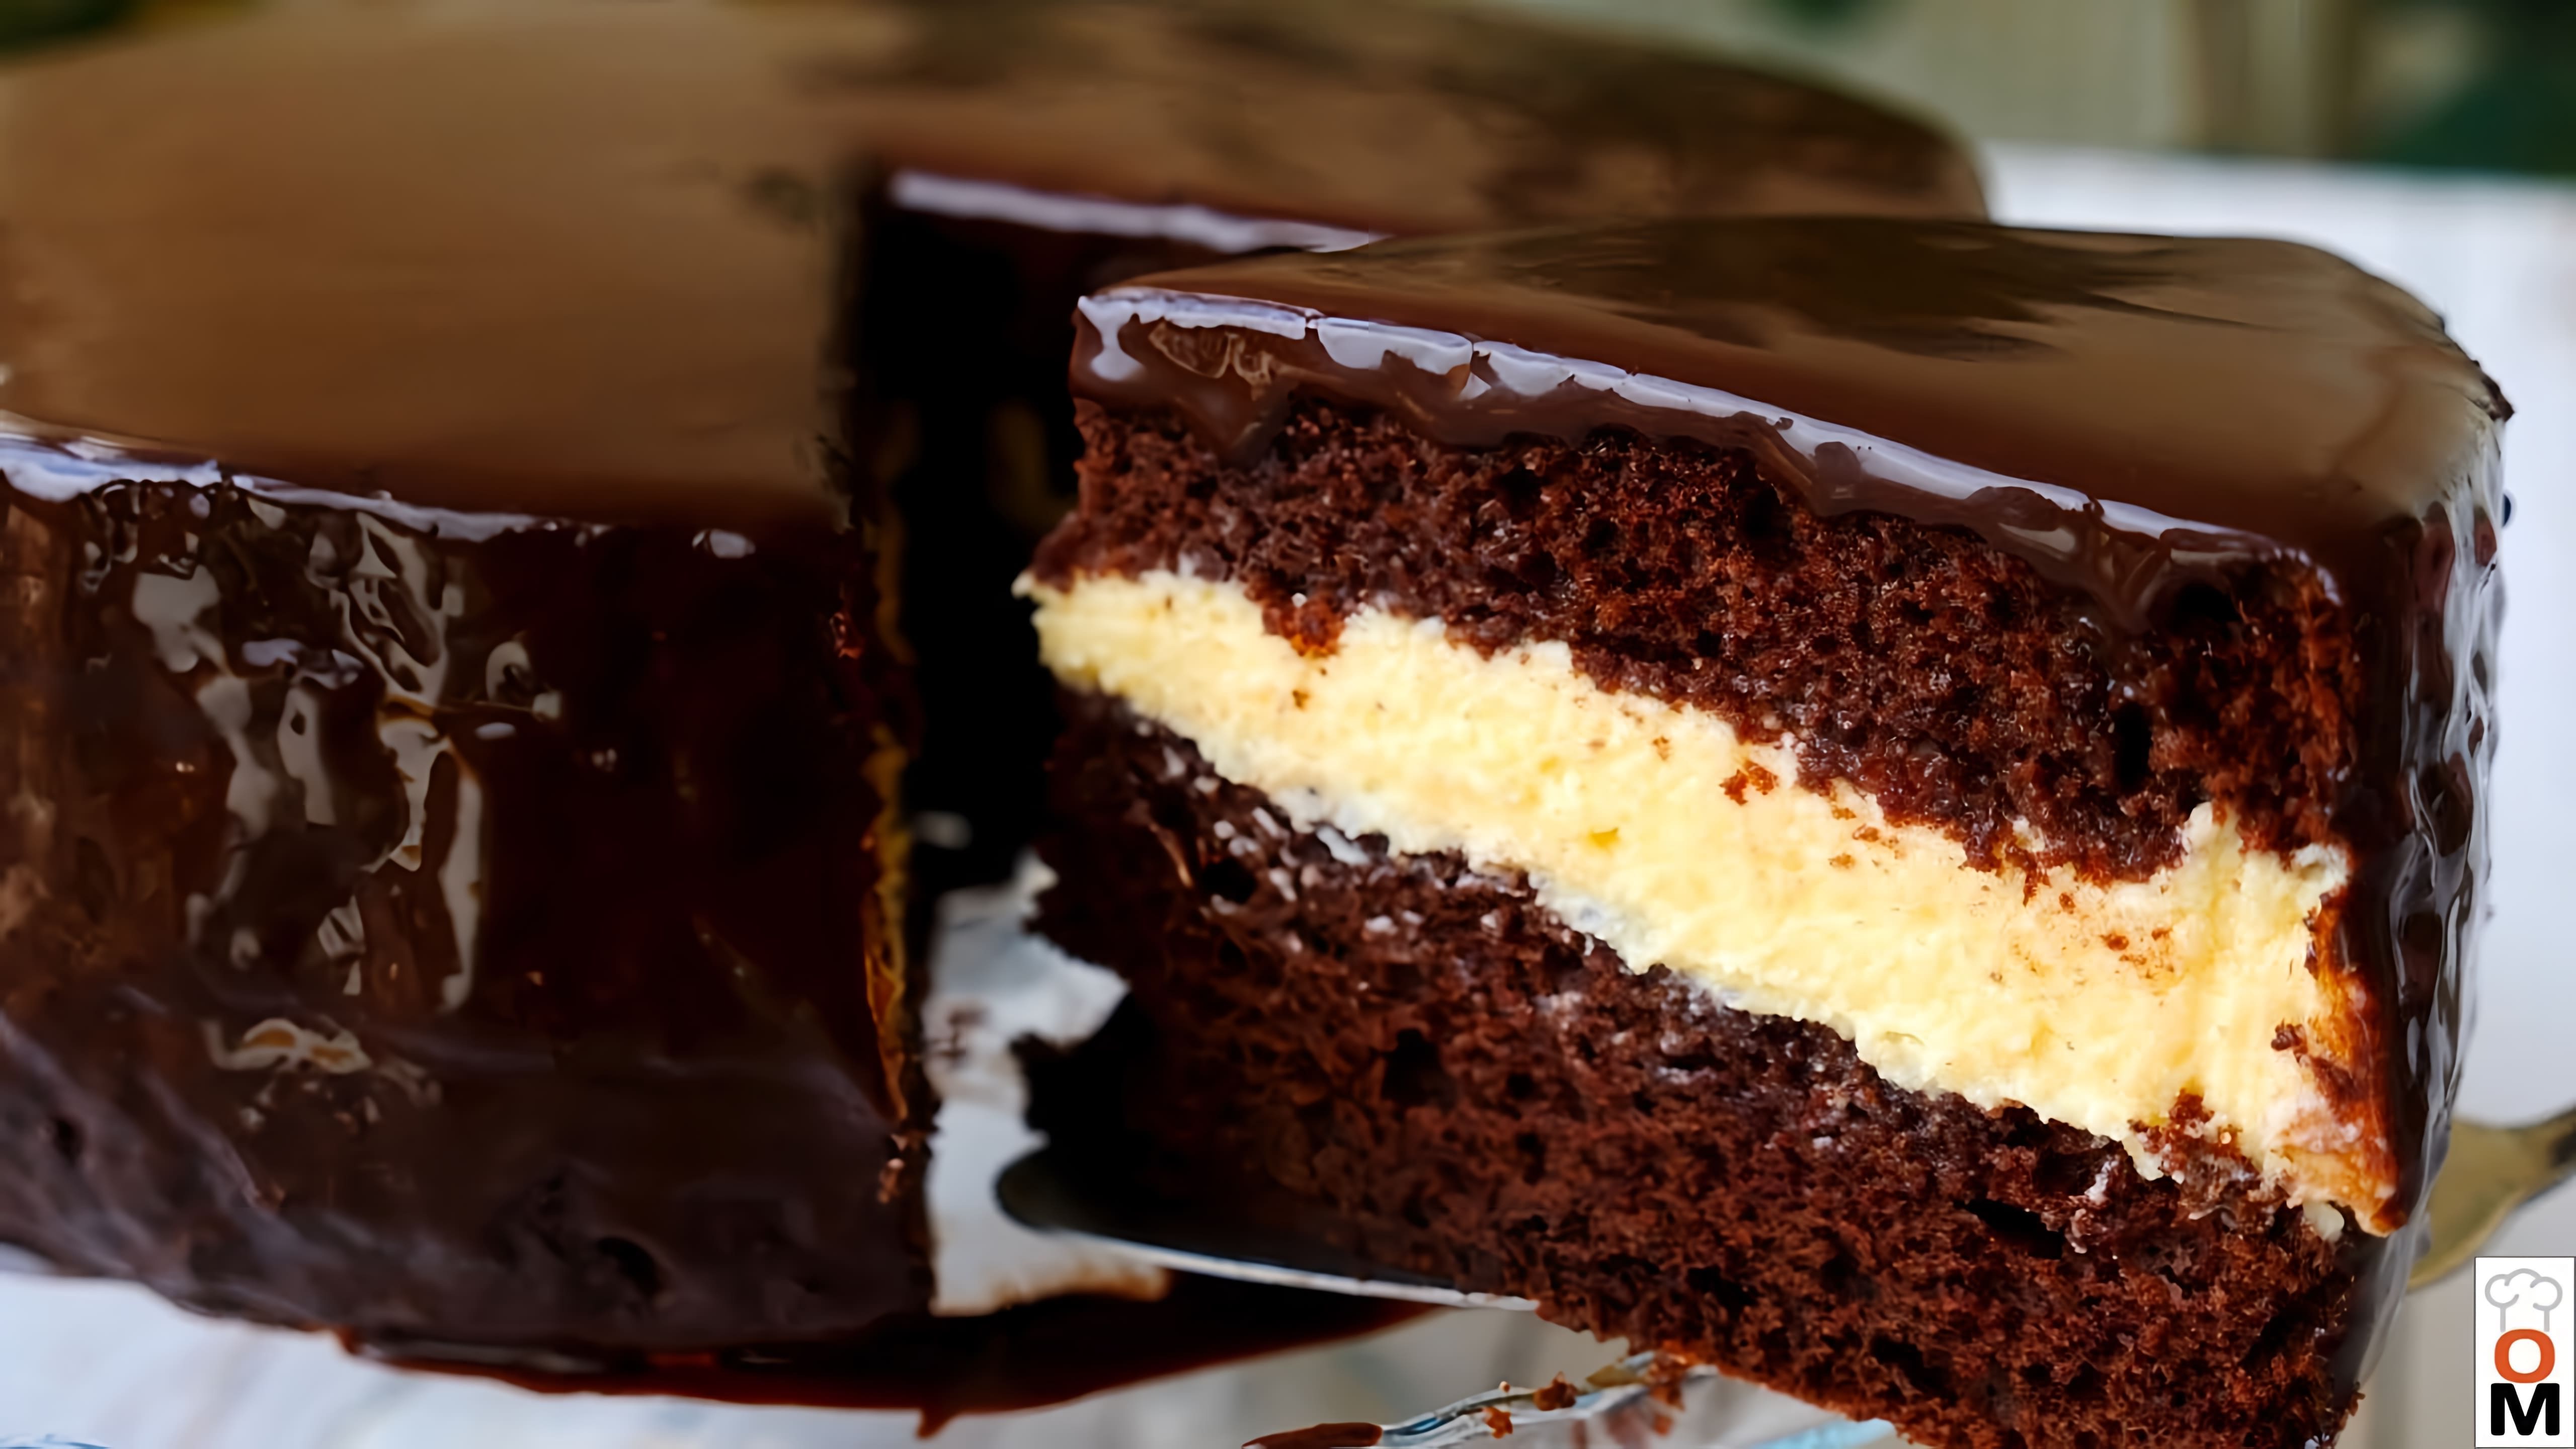 Видео как приготовить "эскимо-торт", который представляет собой многослойный шоколадный бисквитный торт, наполненный кремом и покрытый шоколадной глазурью